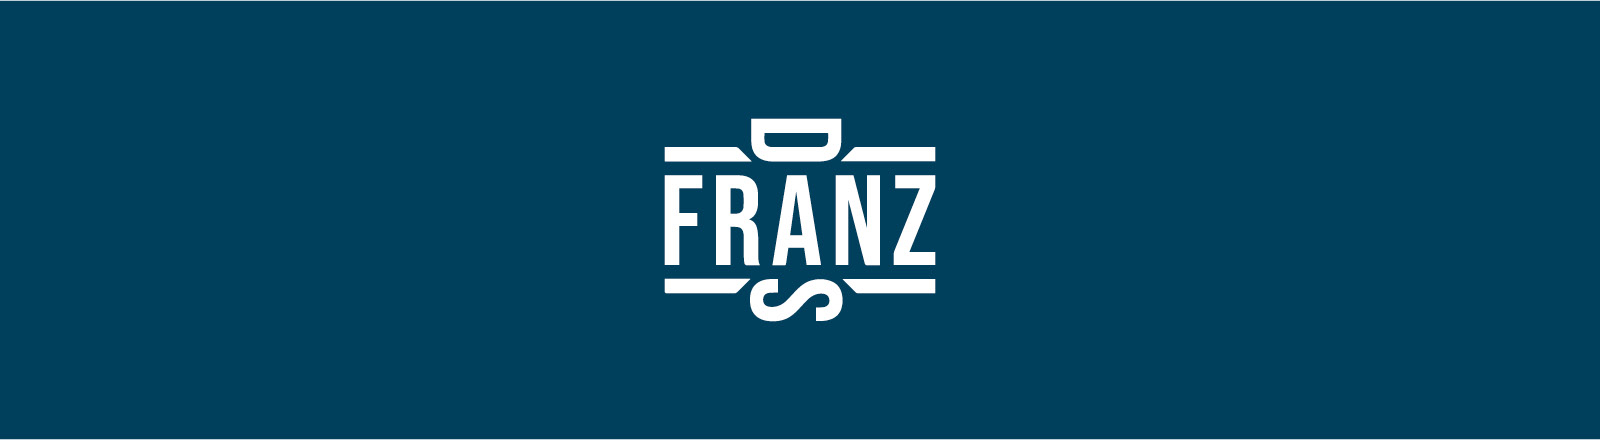 Franz' Logo auf blauem Grund.